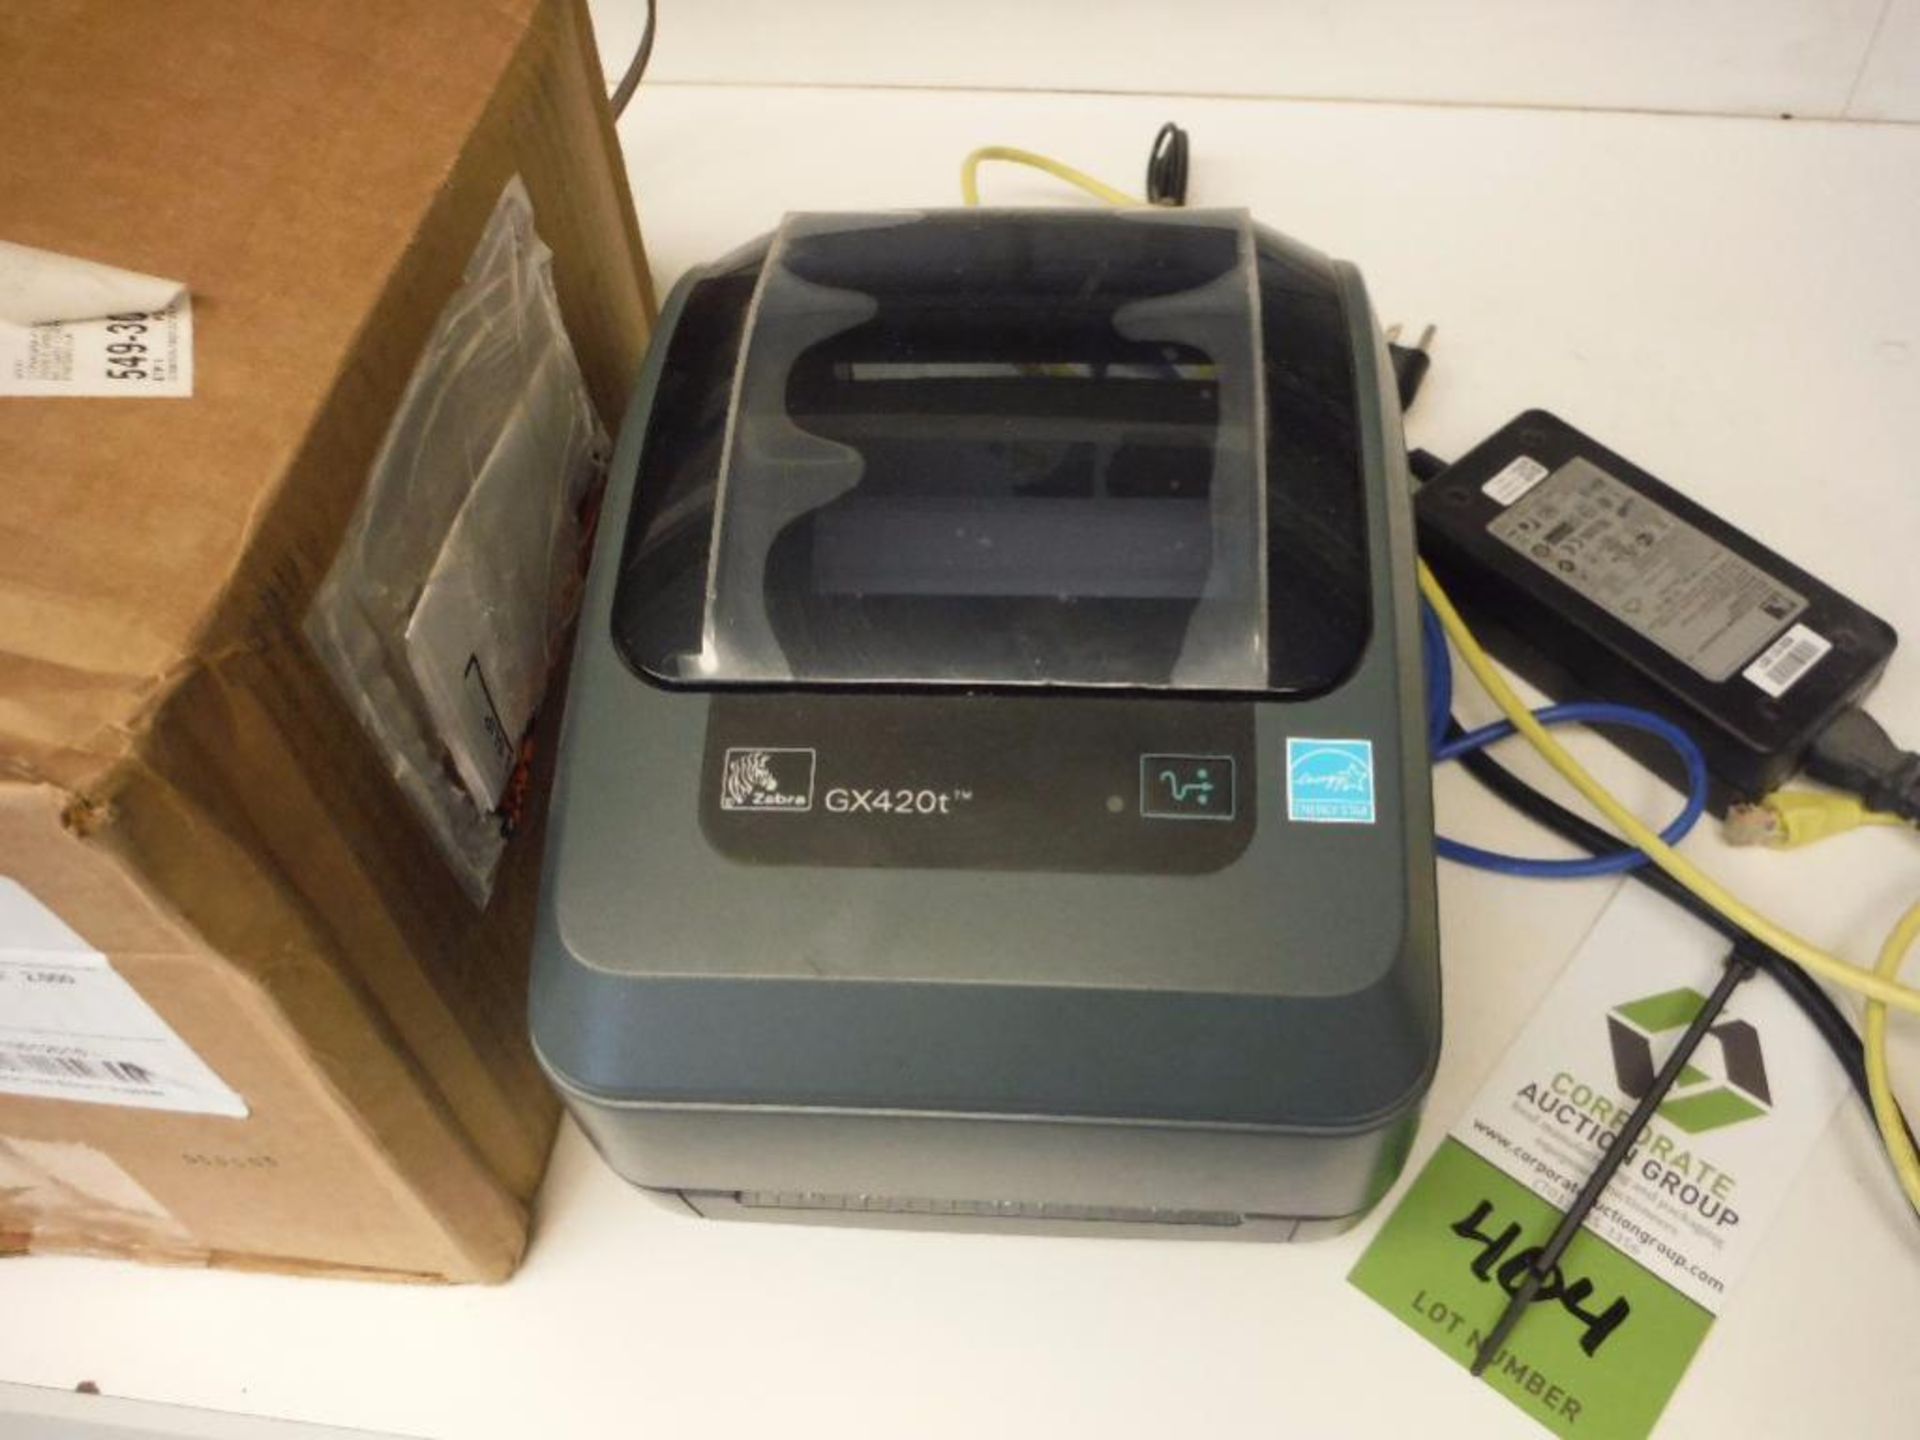 Zebra thermal printer, Model GX420T ** Rigging Fee: $10 ** - Image 2 of 5